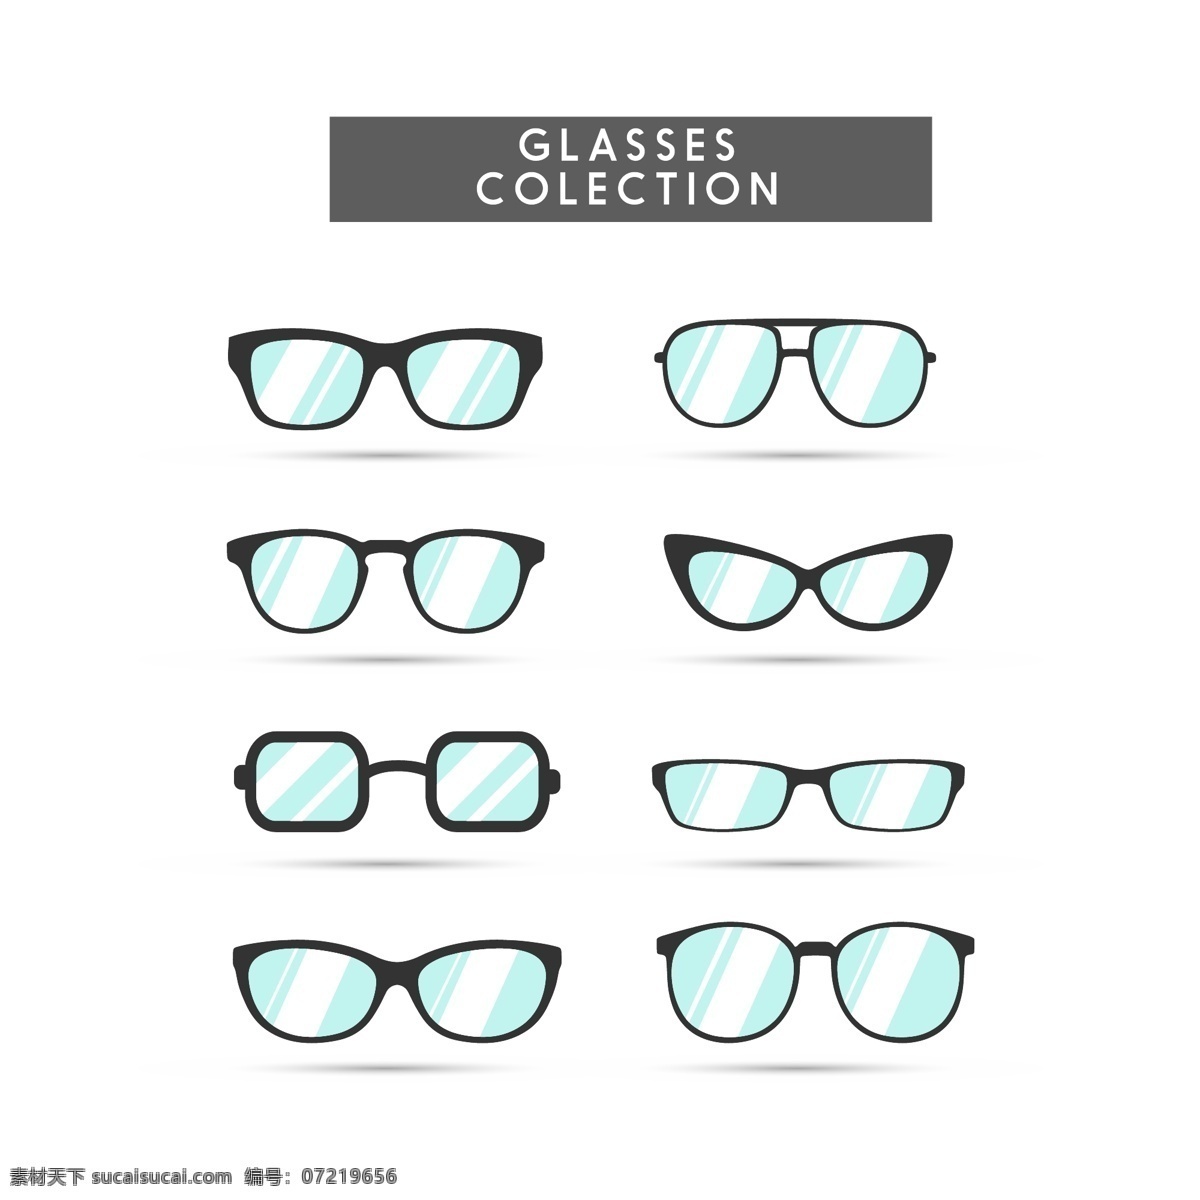 眼镜矢量素材 眼镜矢量 眼镜素材 眼镜 眼镜框矢量 眼镜框素材 眼镜框 共享设计矢量 生活百科 生活用品